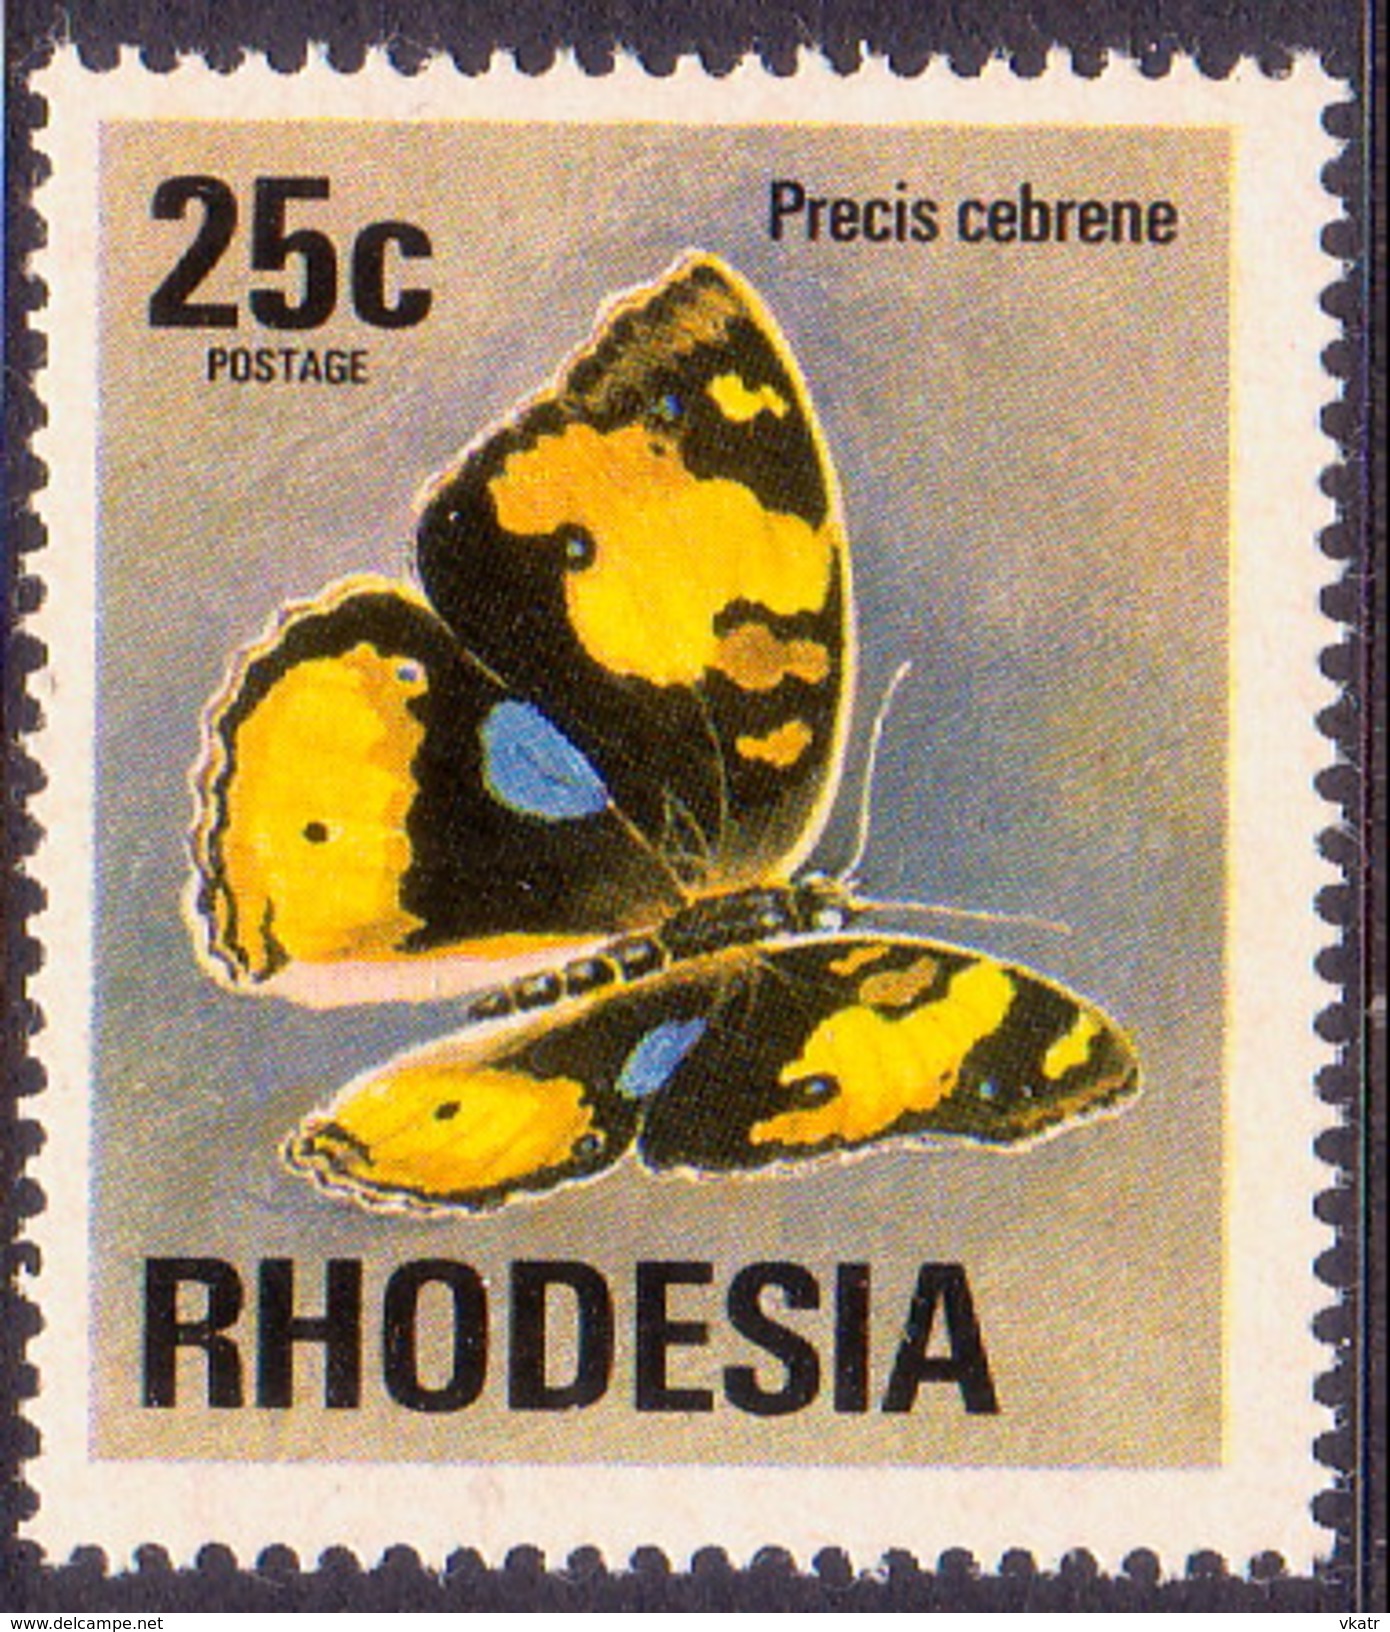 RHODESIA 1974 SG #505 25c MNH Butterfly - Rhodesien (1964-1980)